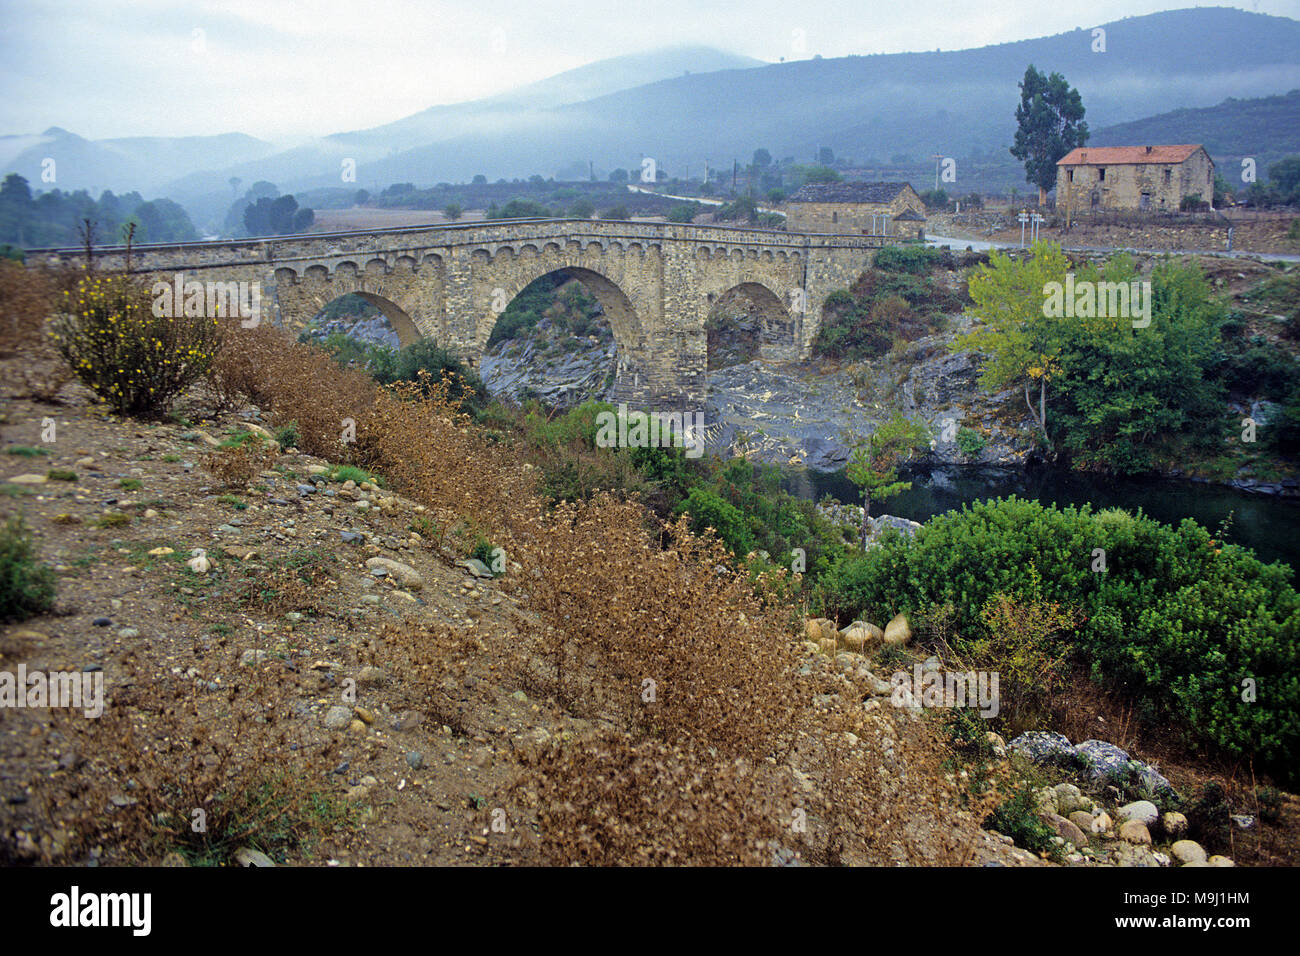 Génois vieux pont de pierre sur le fleuve Tavignano, Calacuccia, Corse, France, Europe, Méditerranée Banque D'Images